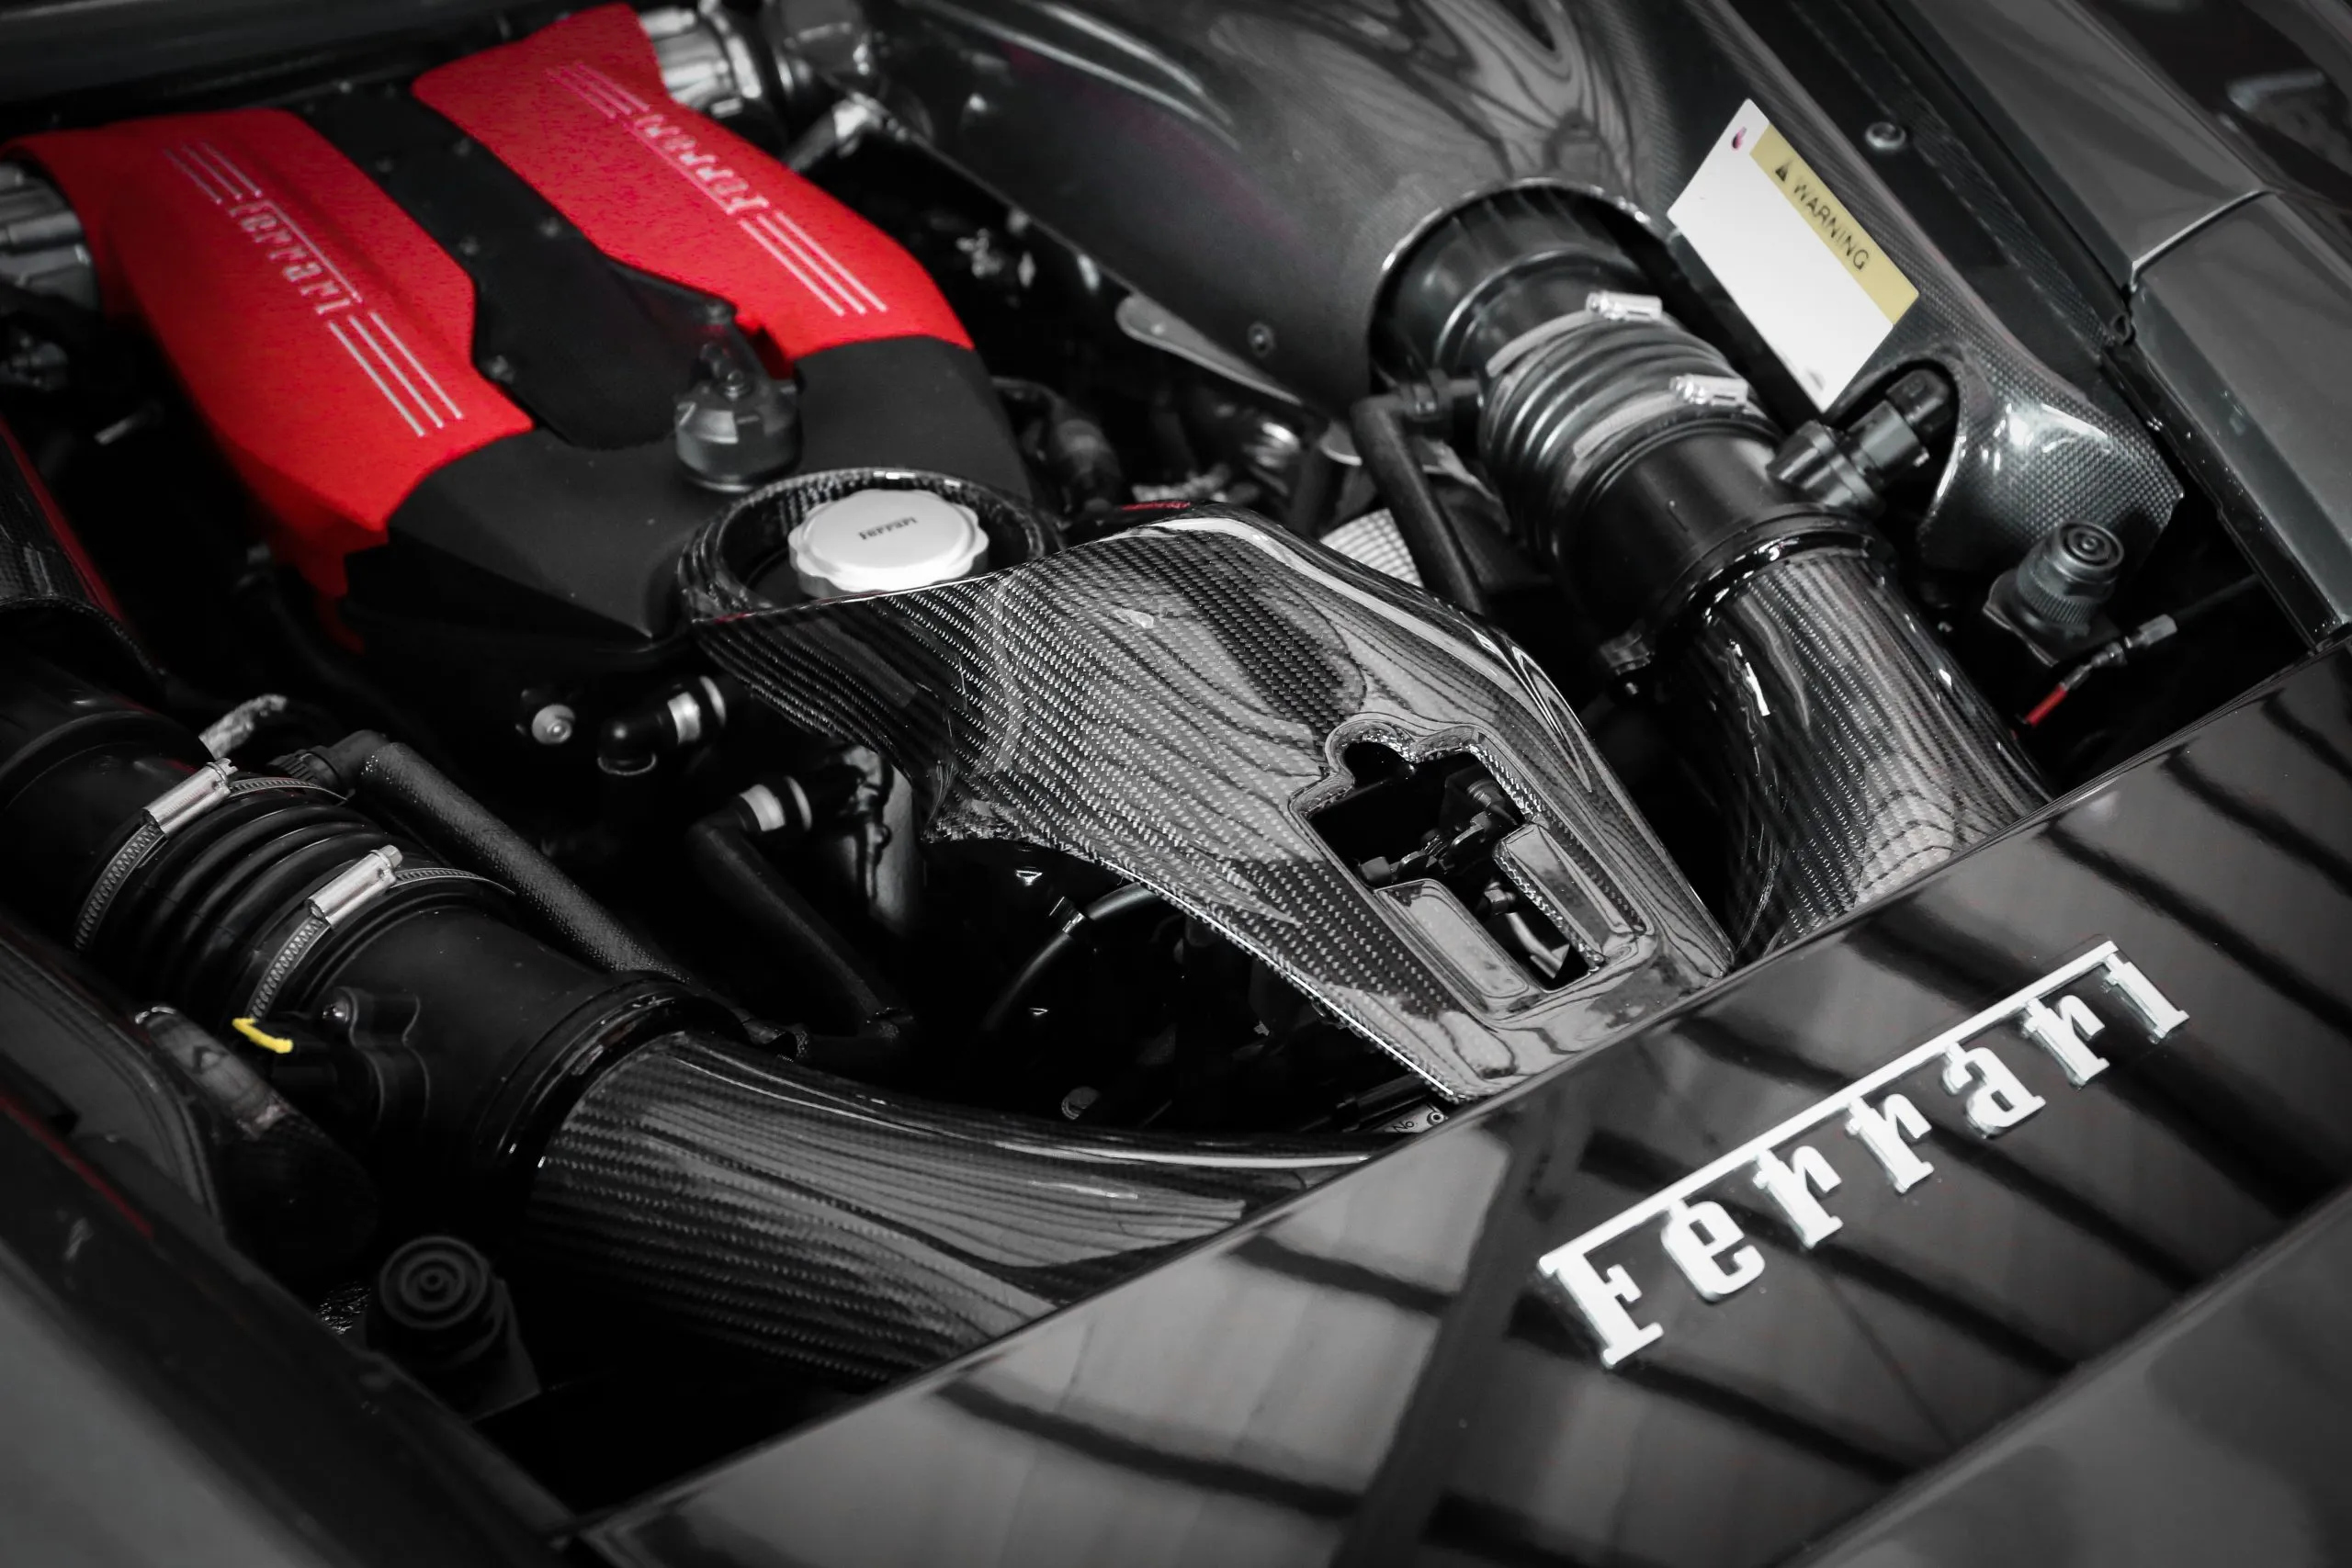 Armaspeed Carbon Ansaugsystem für Ferrari 488 GTB